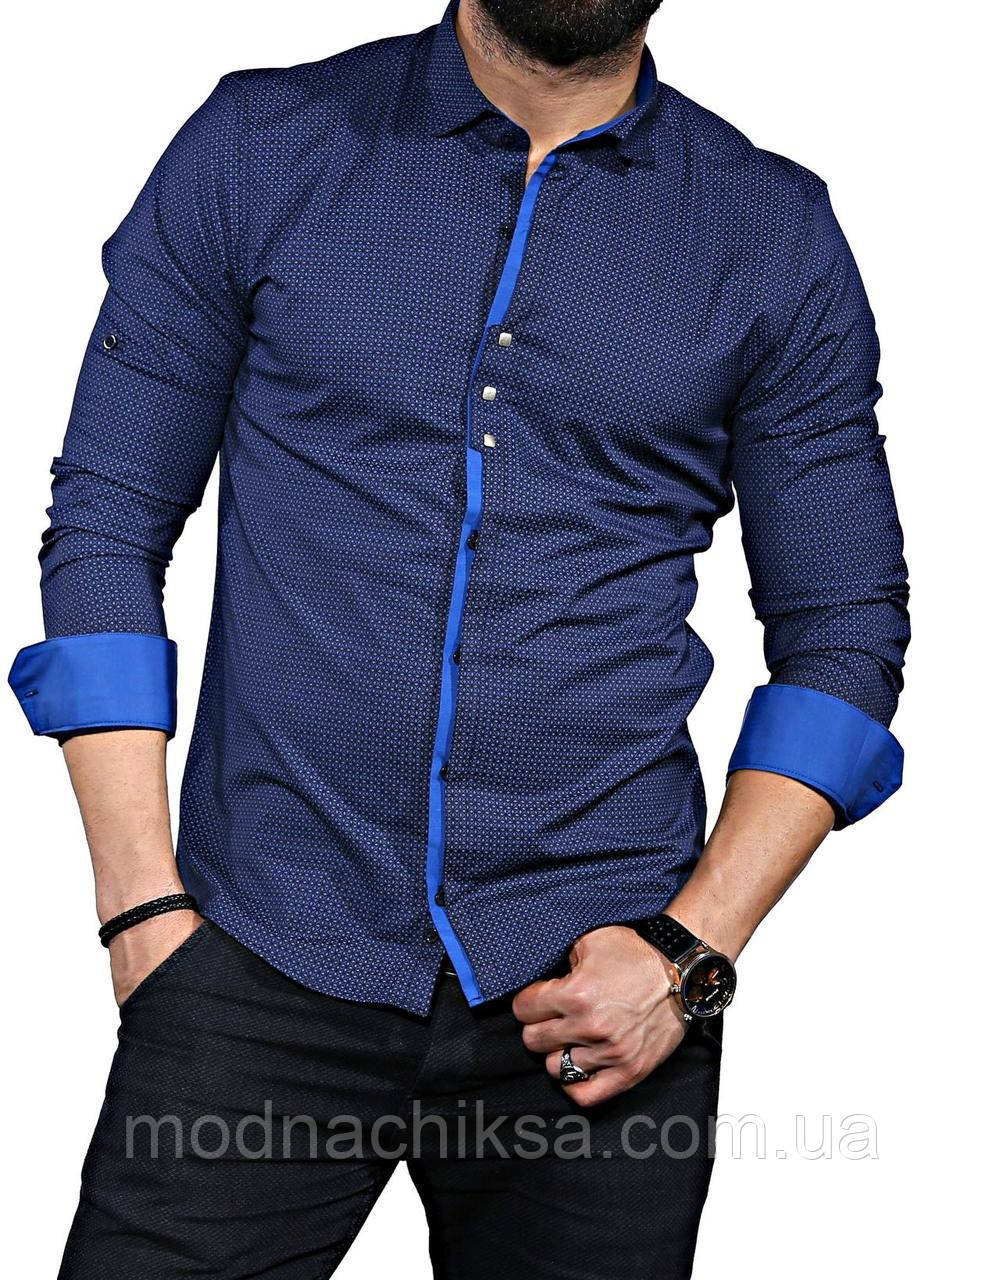 Купить синюю рубашку мужскую. Синяя рубашка мужская. Синяя рубашка мужская с длинным рукавом. Голубая рубашка мужская с длинным рукавом. Темно синяя рубашка.